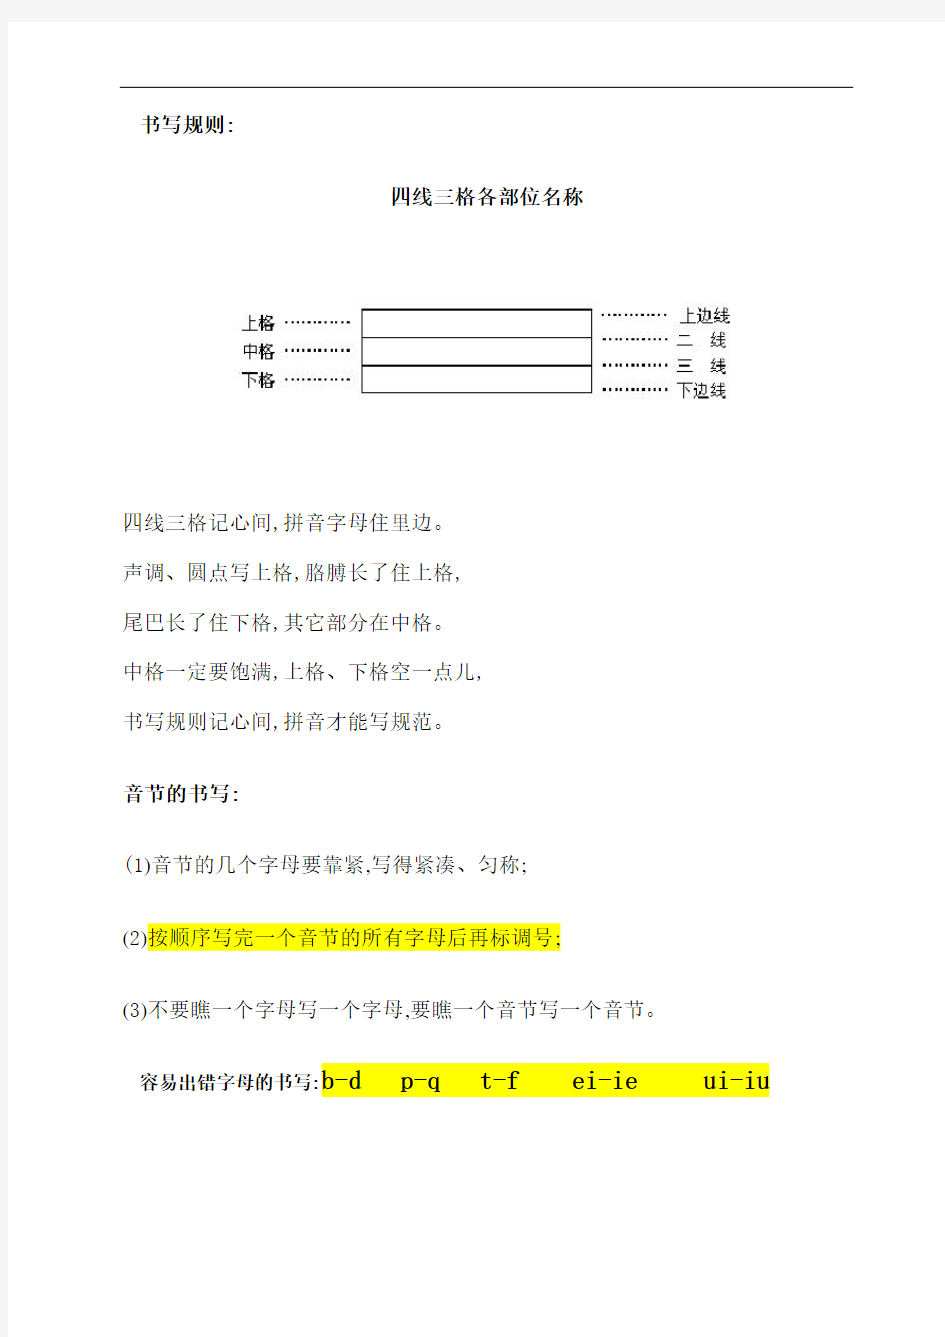 汉语拼音拼读方法书写格式